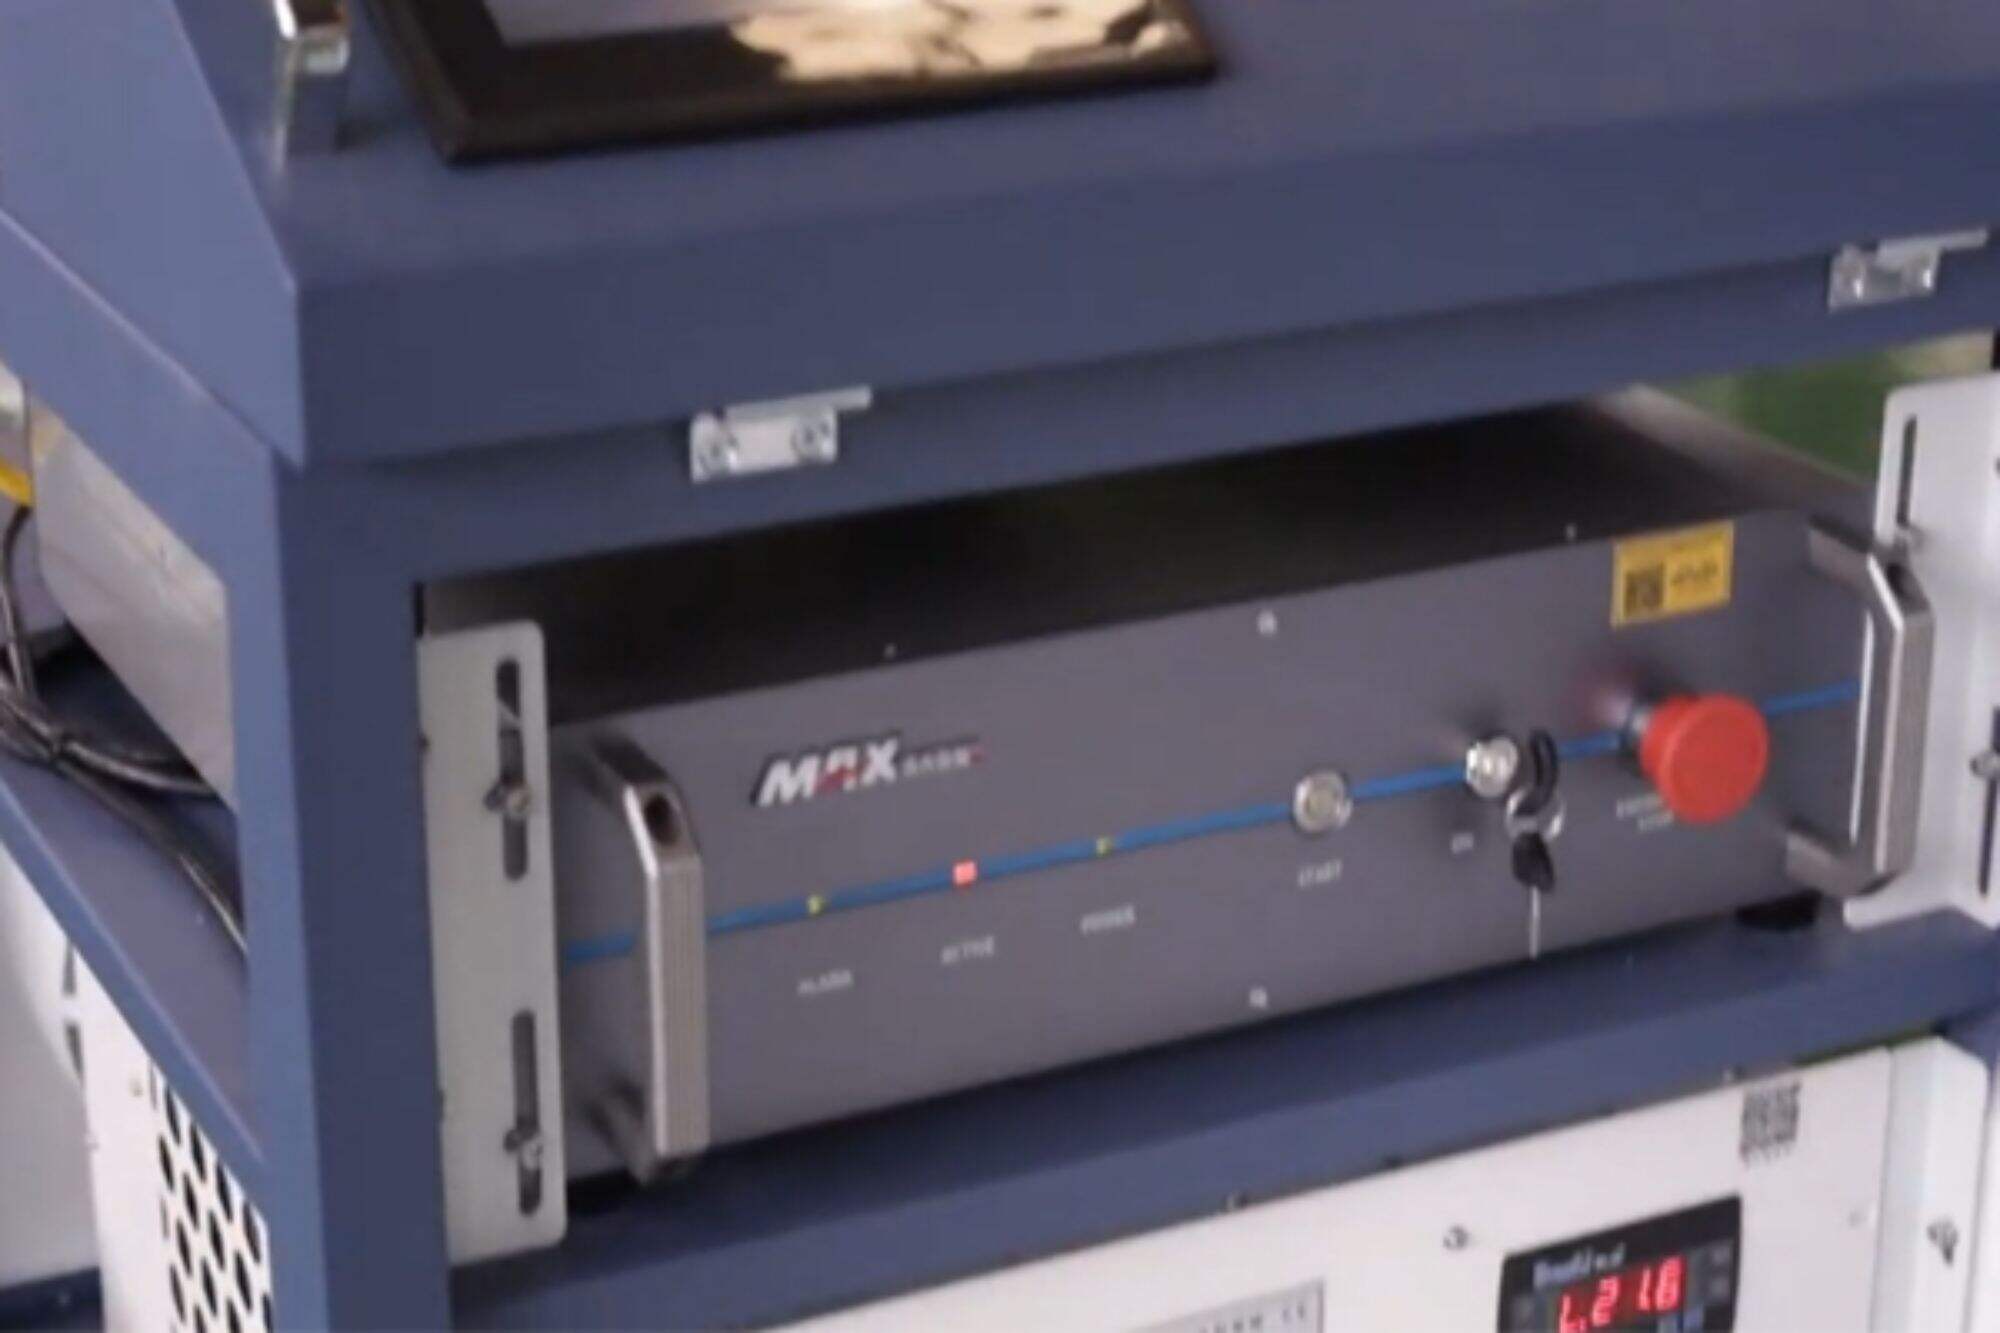 Laserowa maszyna czyszcząca DMK CW o mocy 2000 W. Sprzęt zostanie przetestowany przed wysyłką